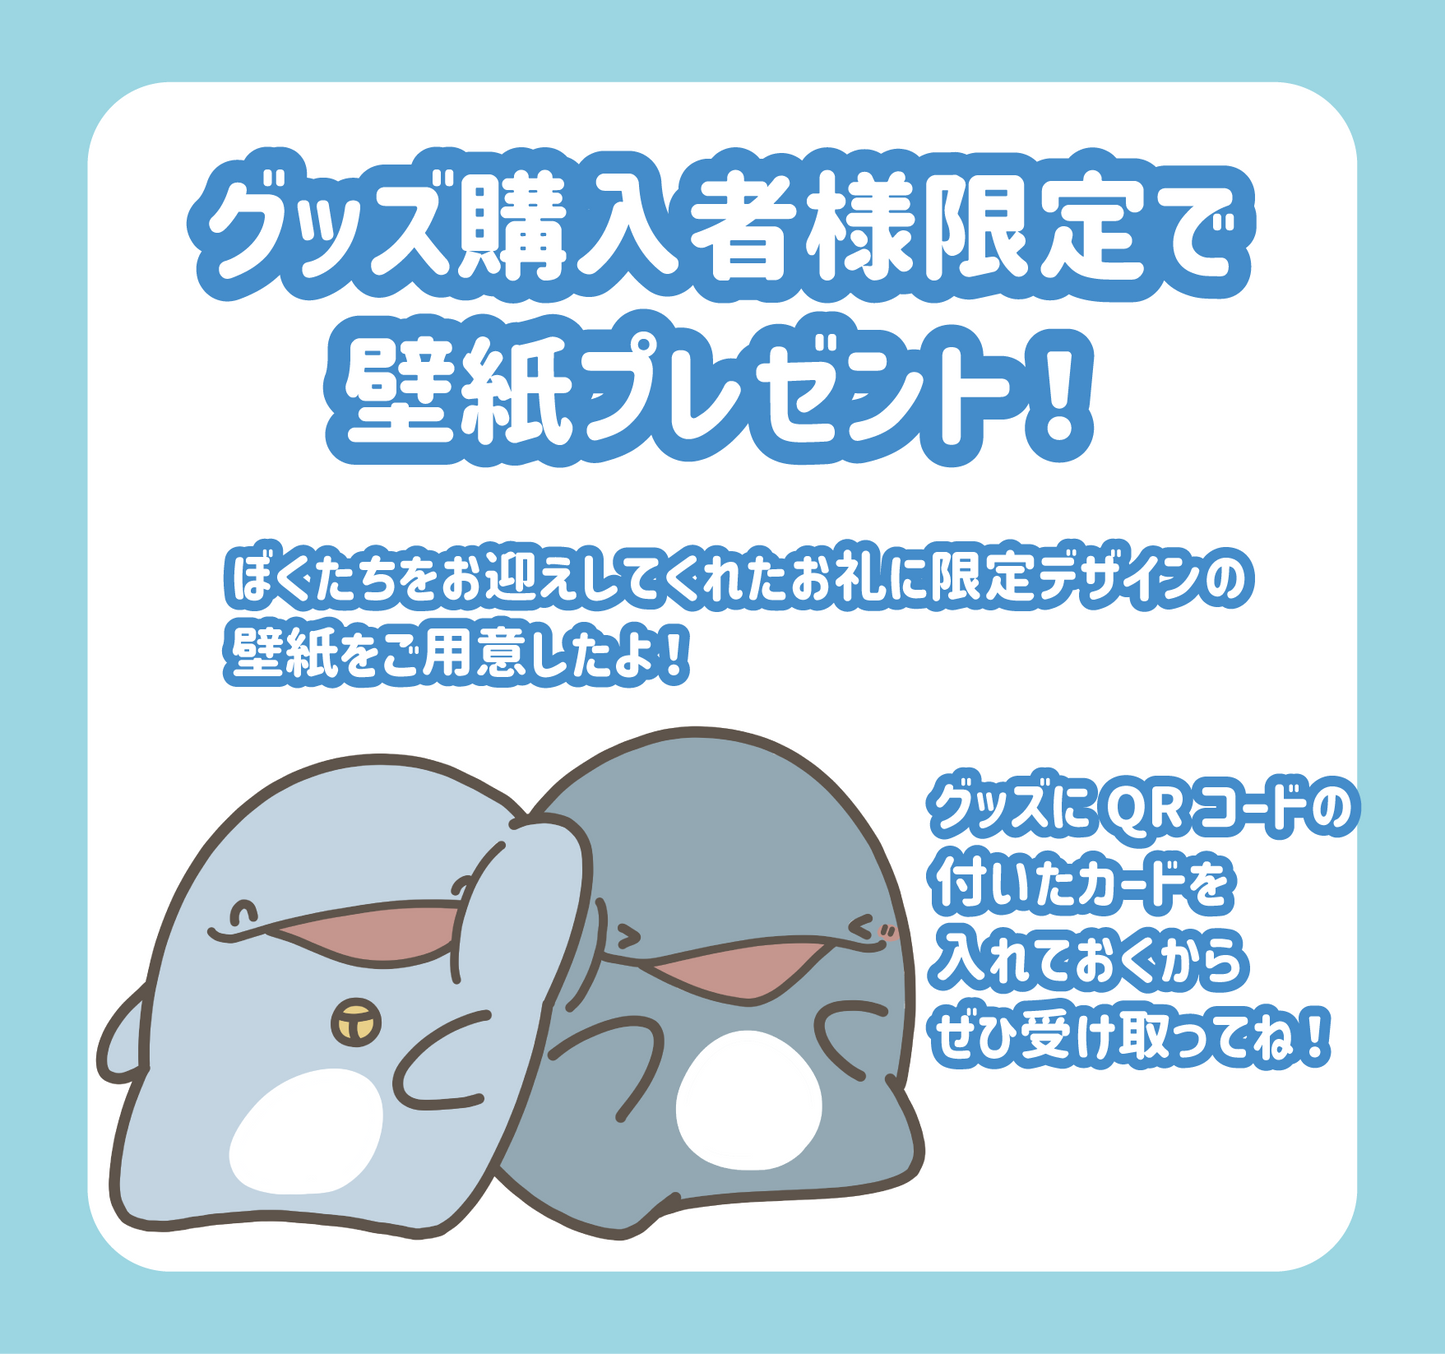 【親子イルカ】お守り袋キーホルダー【4月中旬発送】